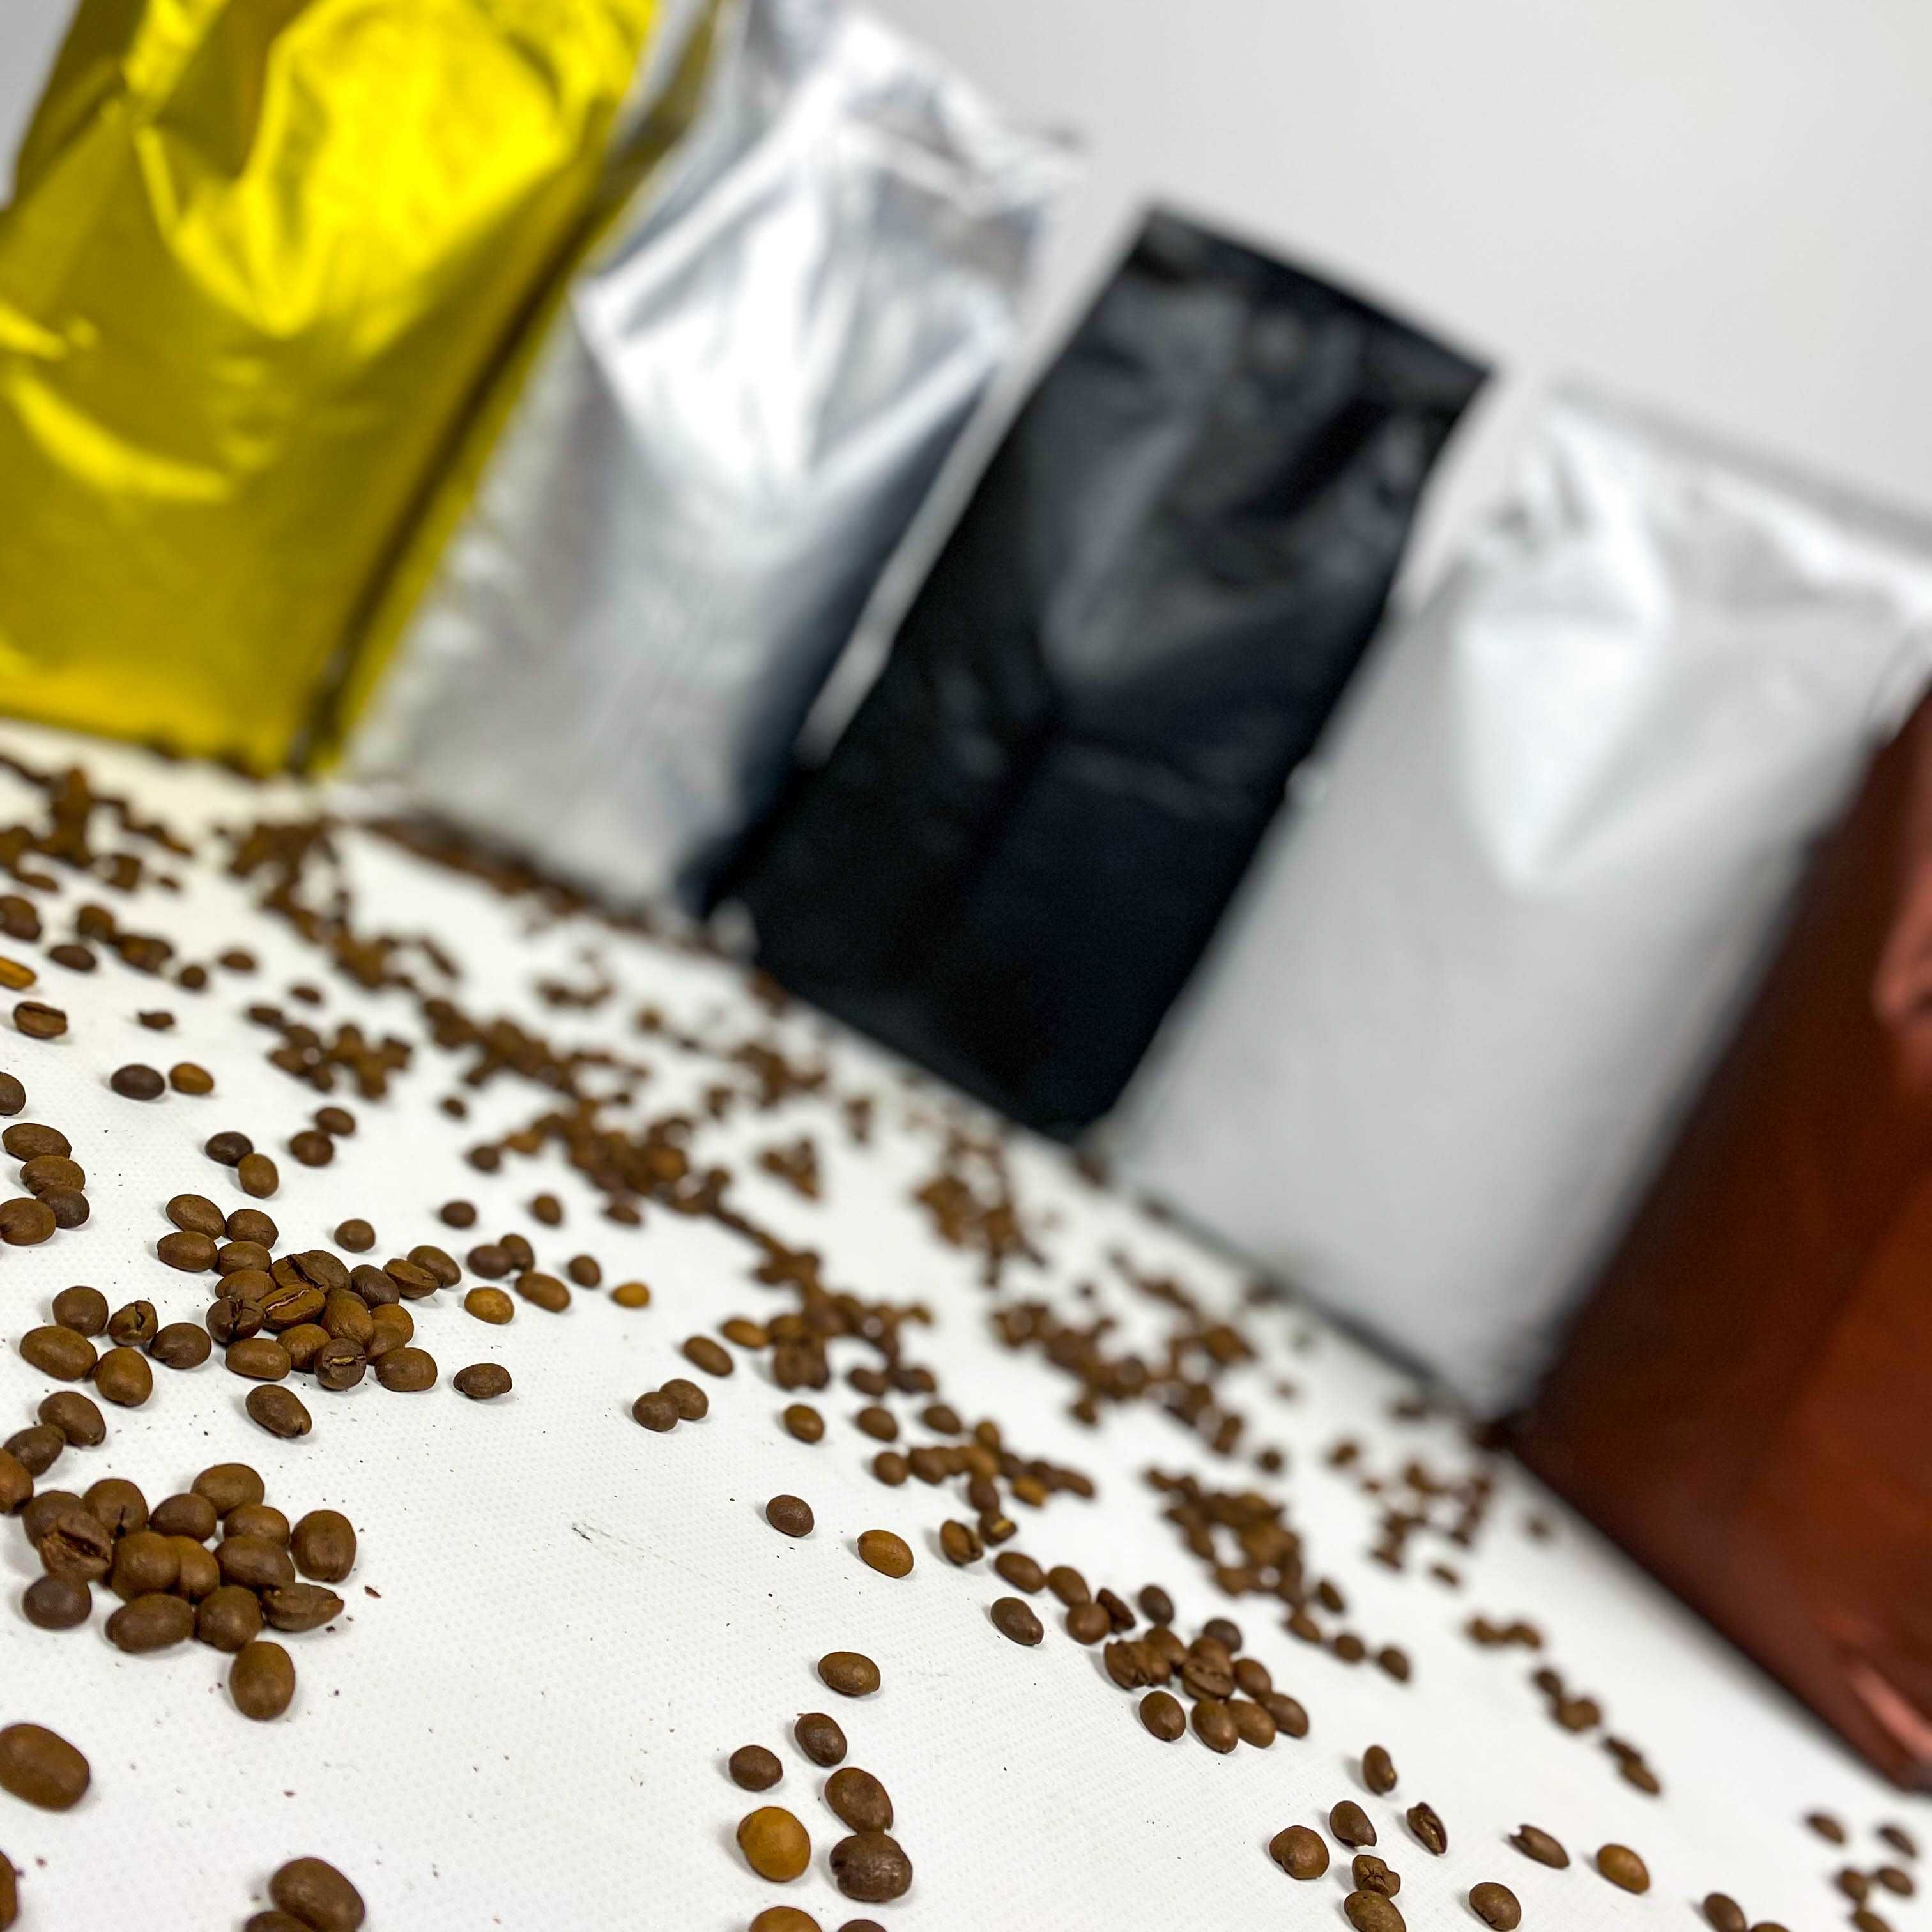 ТОП-вариант кофе в зернах для Бизнеса по Супер цене! ОПТ, Розница.